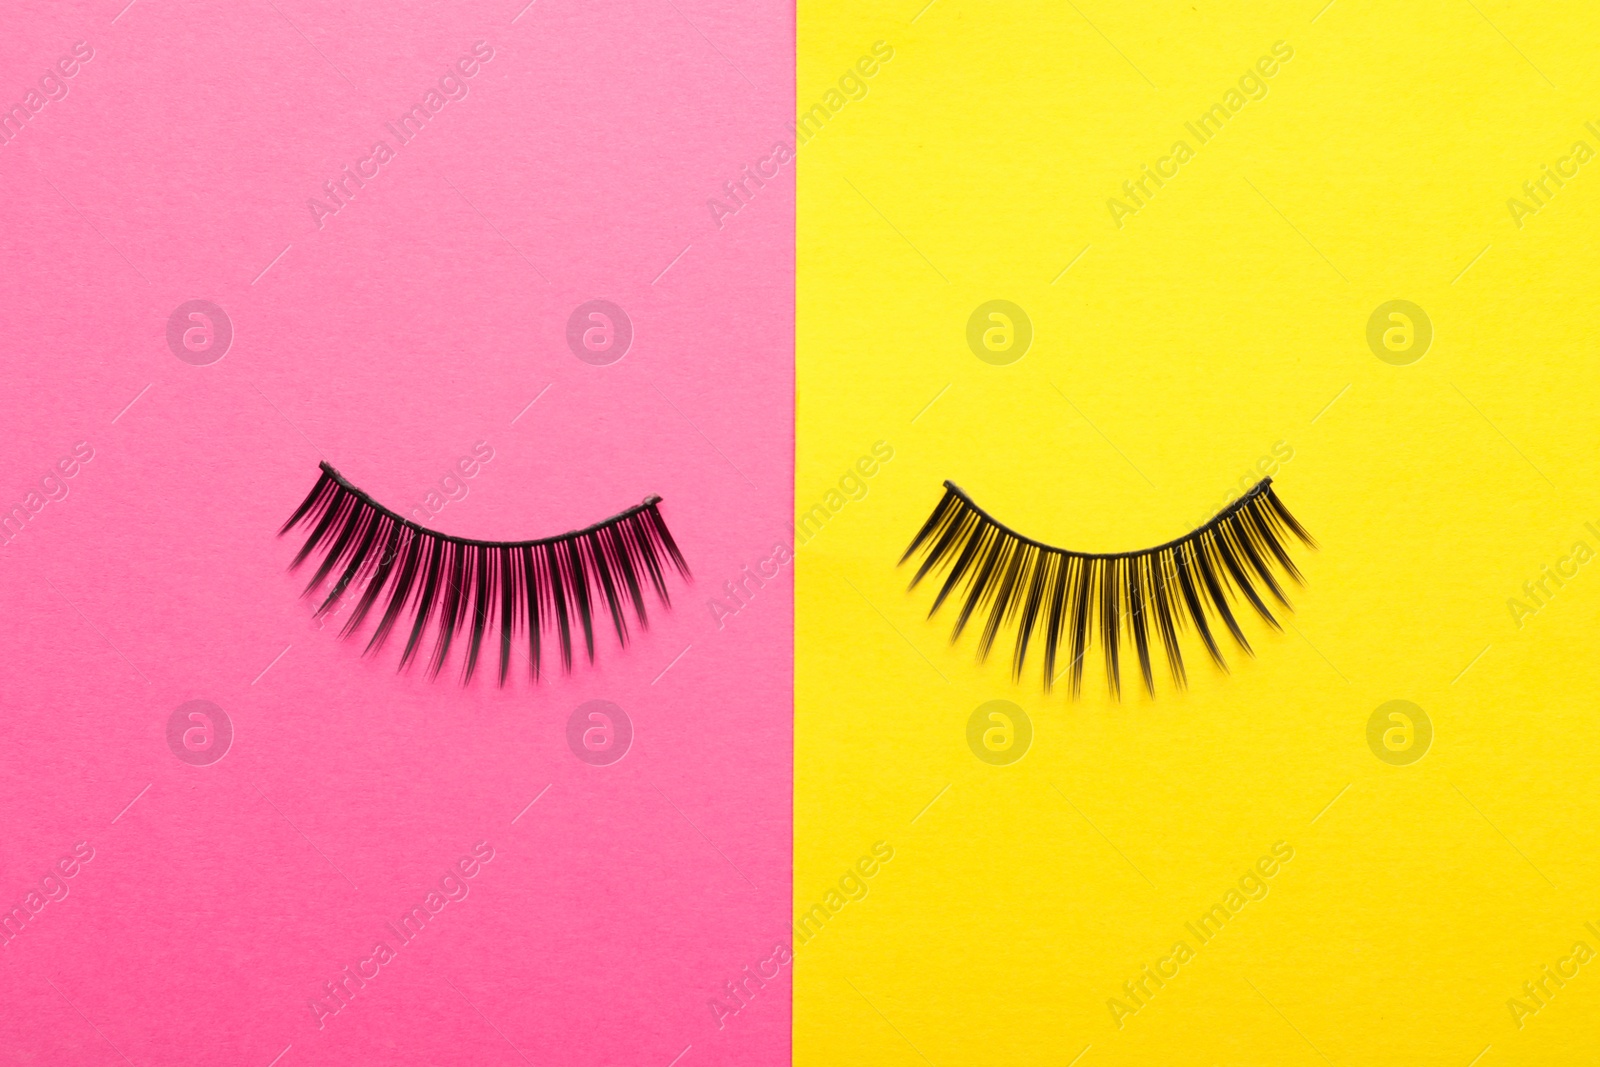 Photo of False eyelashes on color background, flat lay